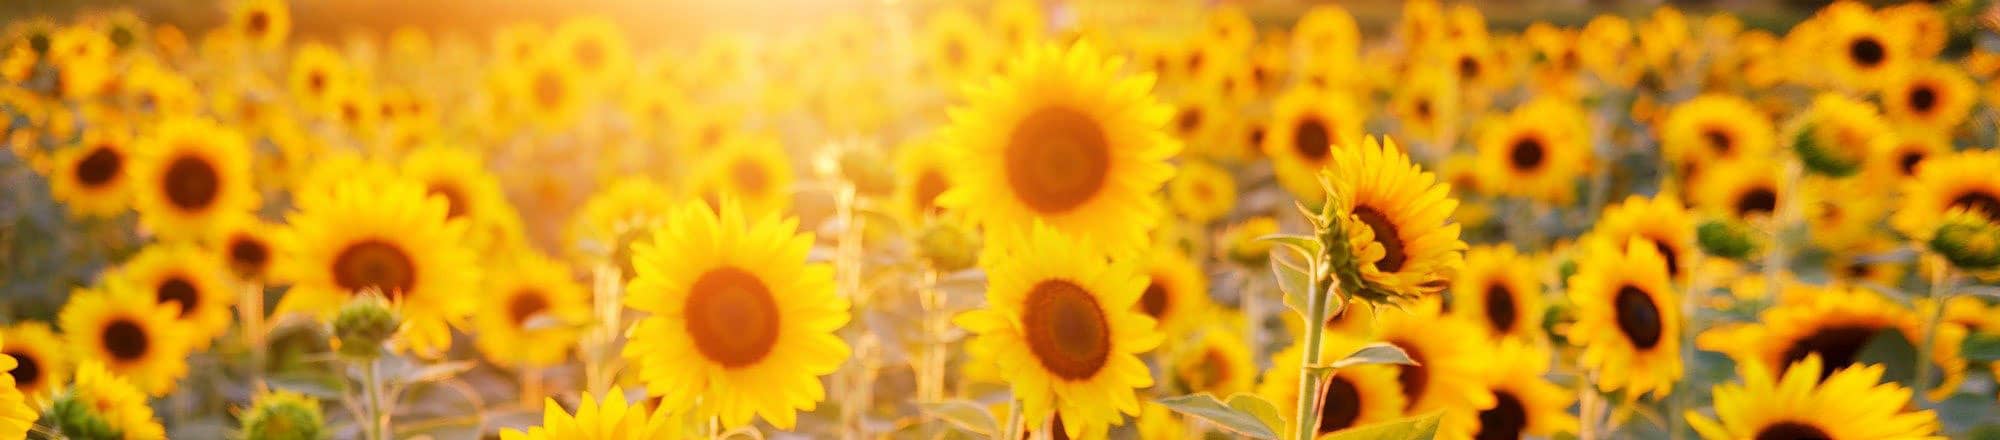 Sonnenblumen – und die Sonne scheint!